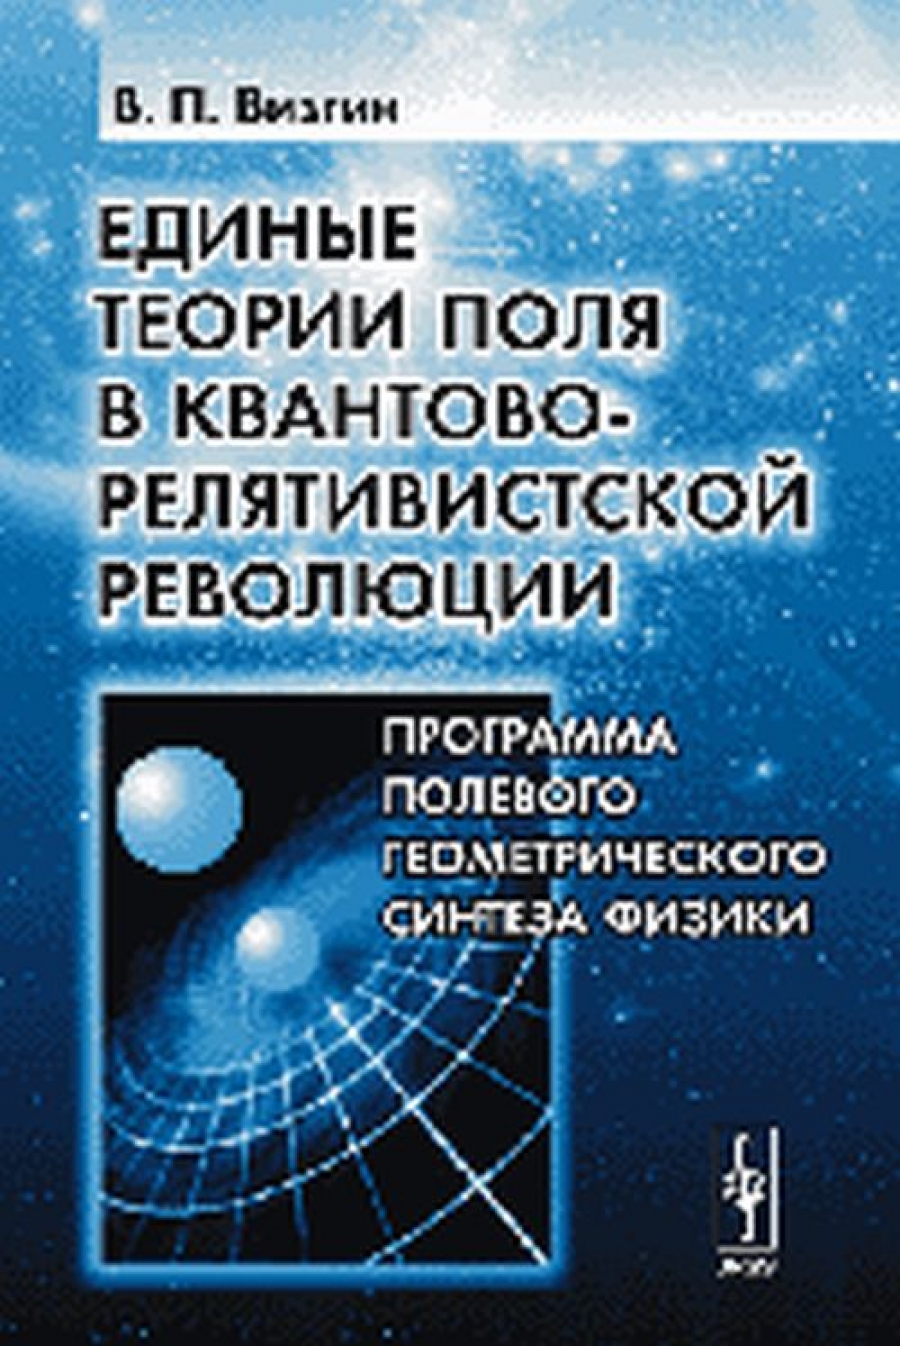 Визгин В.П. Единые теории поля в квантово-релятивистской революции: Программа полевого геометрического синтеза физики.  